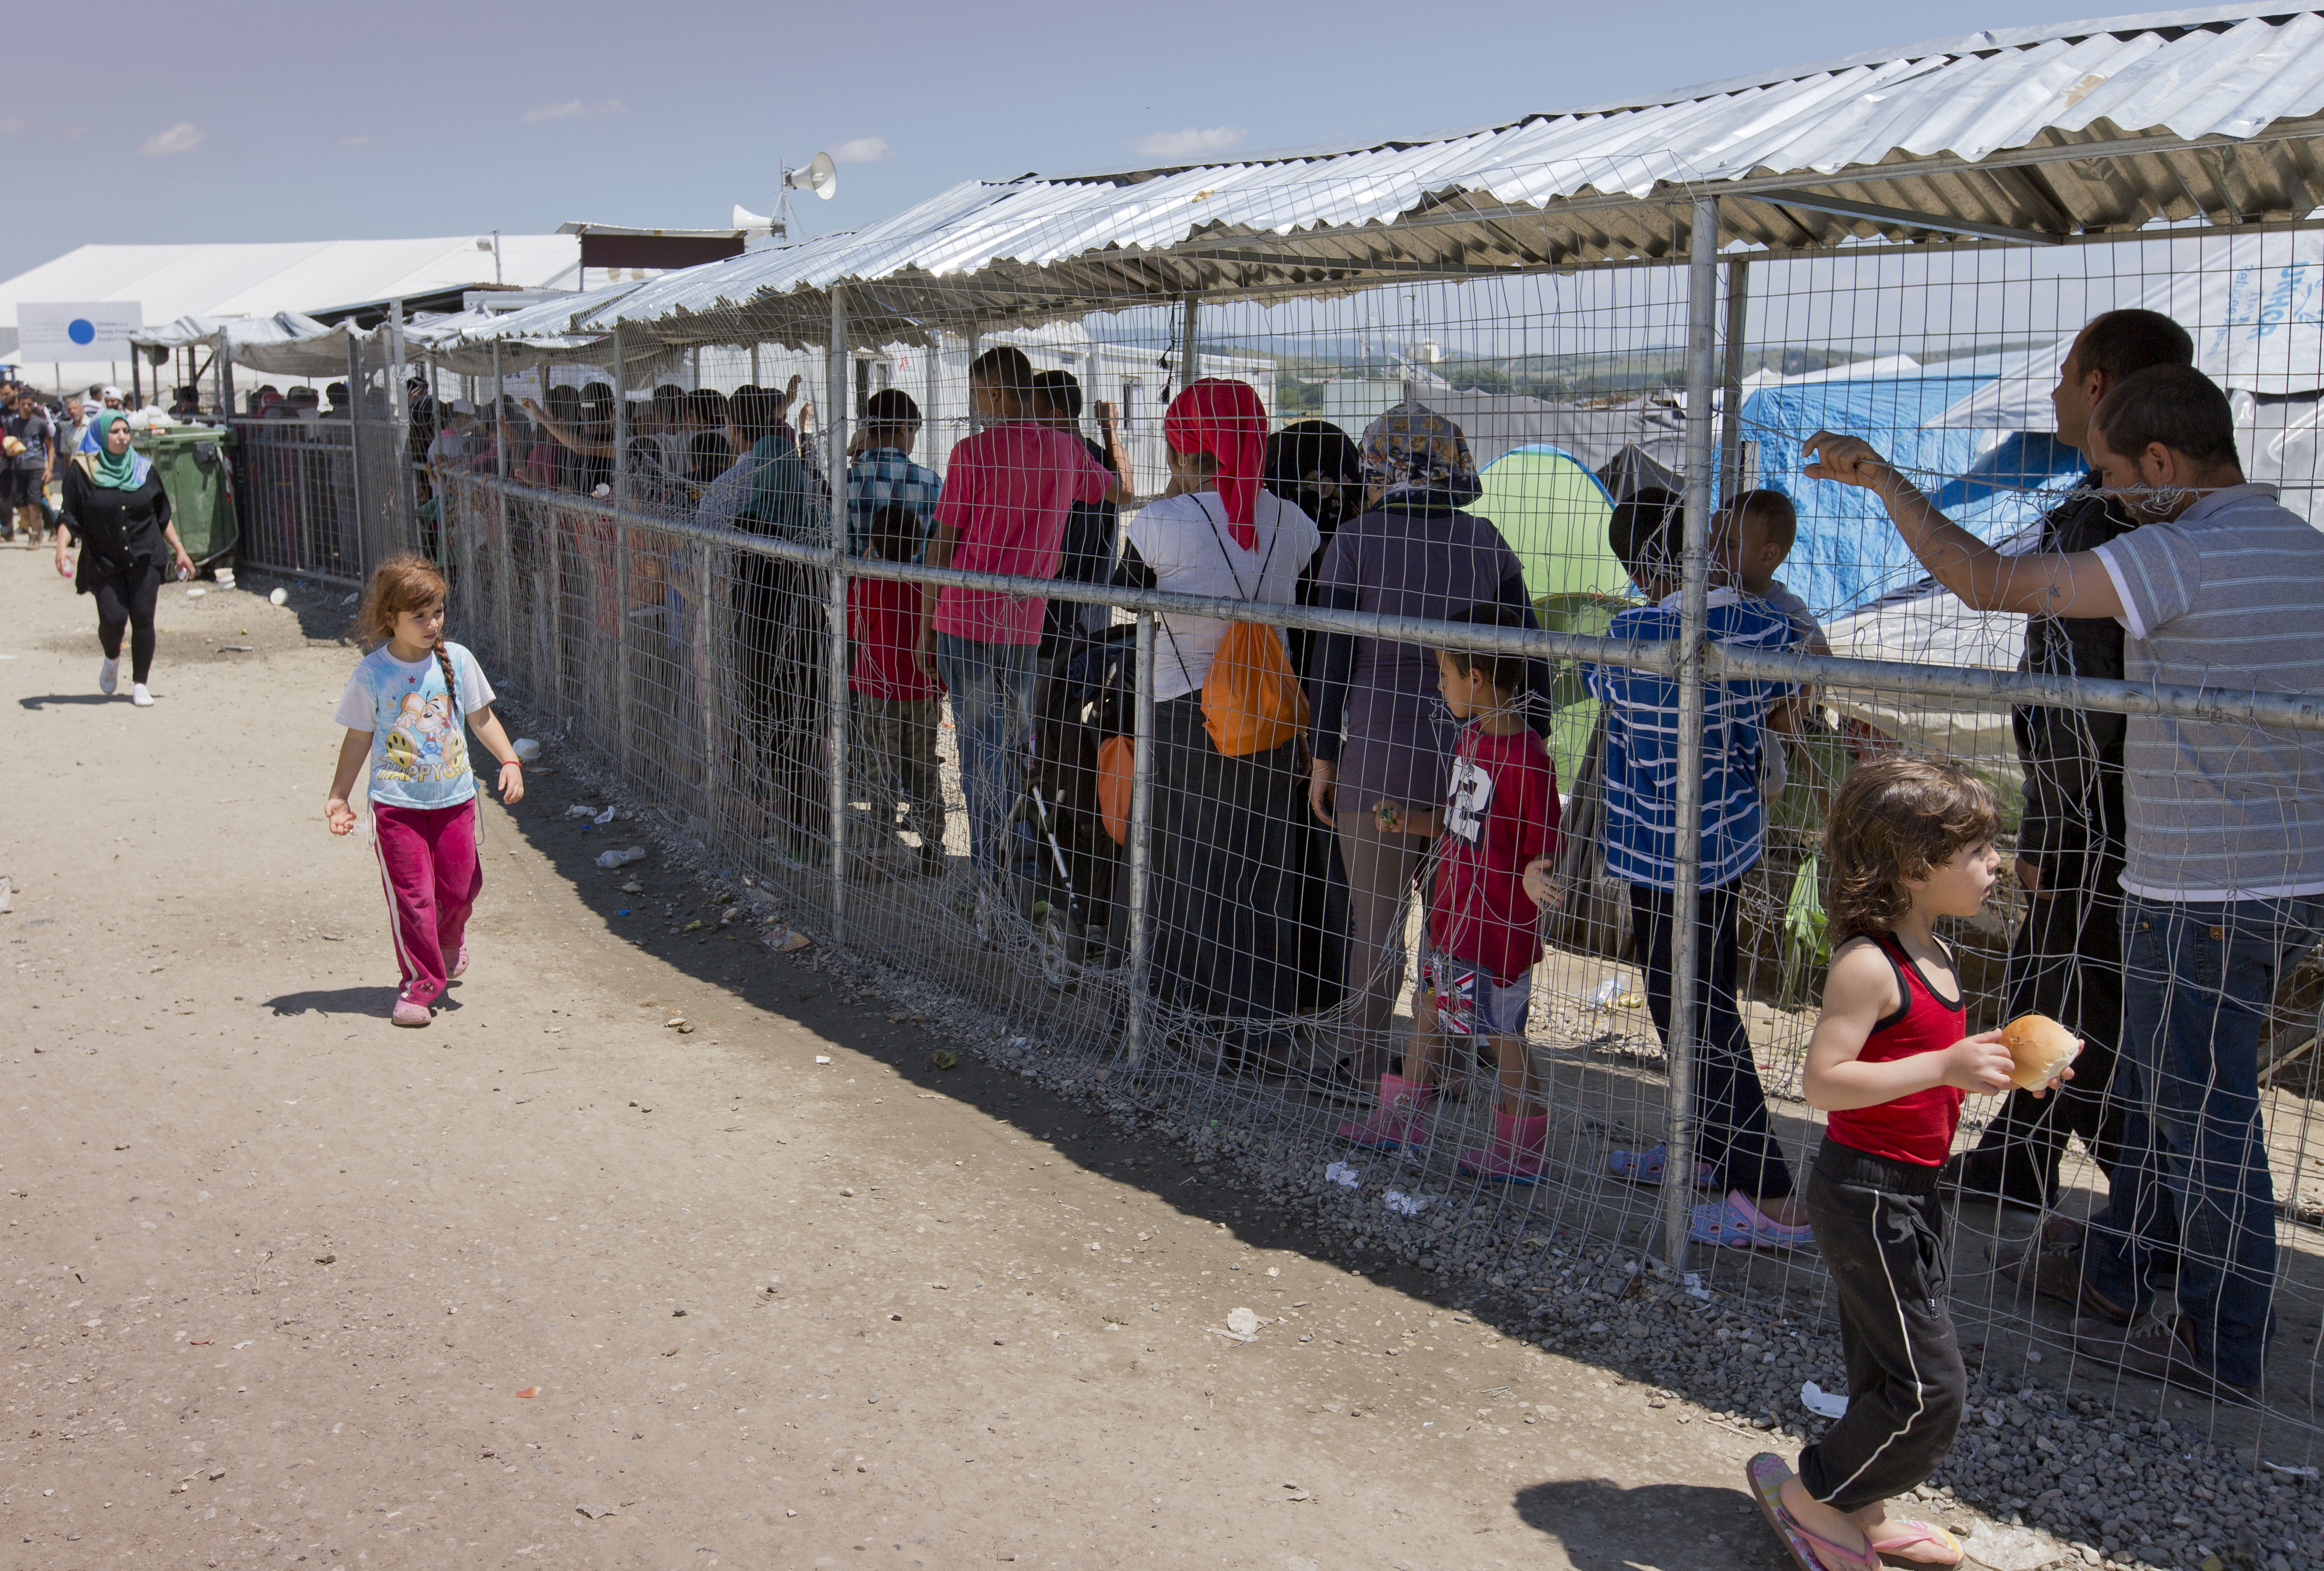 Grecia a inceput EVACUAREA refugiatilor din tabara de la Idomeni. Mesajul de pe autocarele ce au transportat 800 de migranti - Imaginea 3